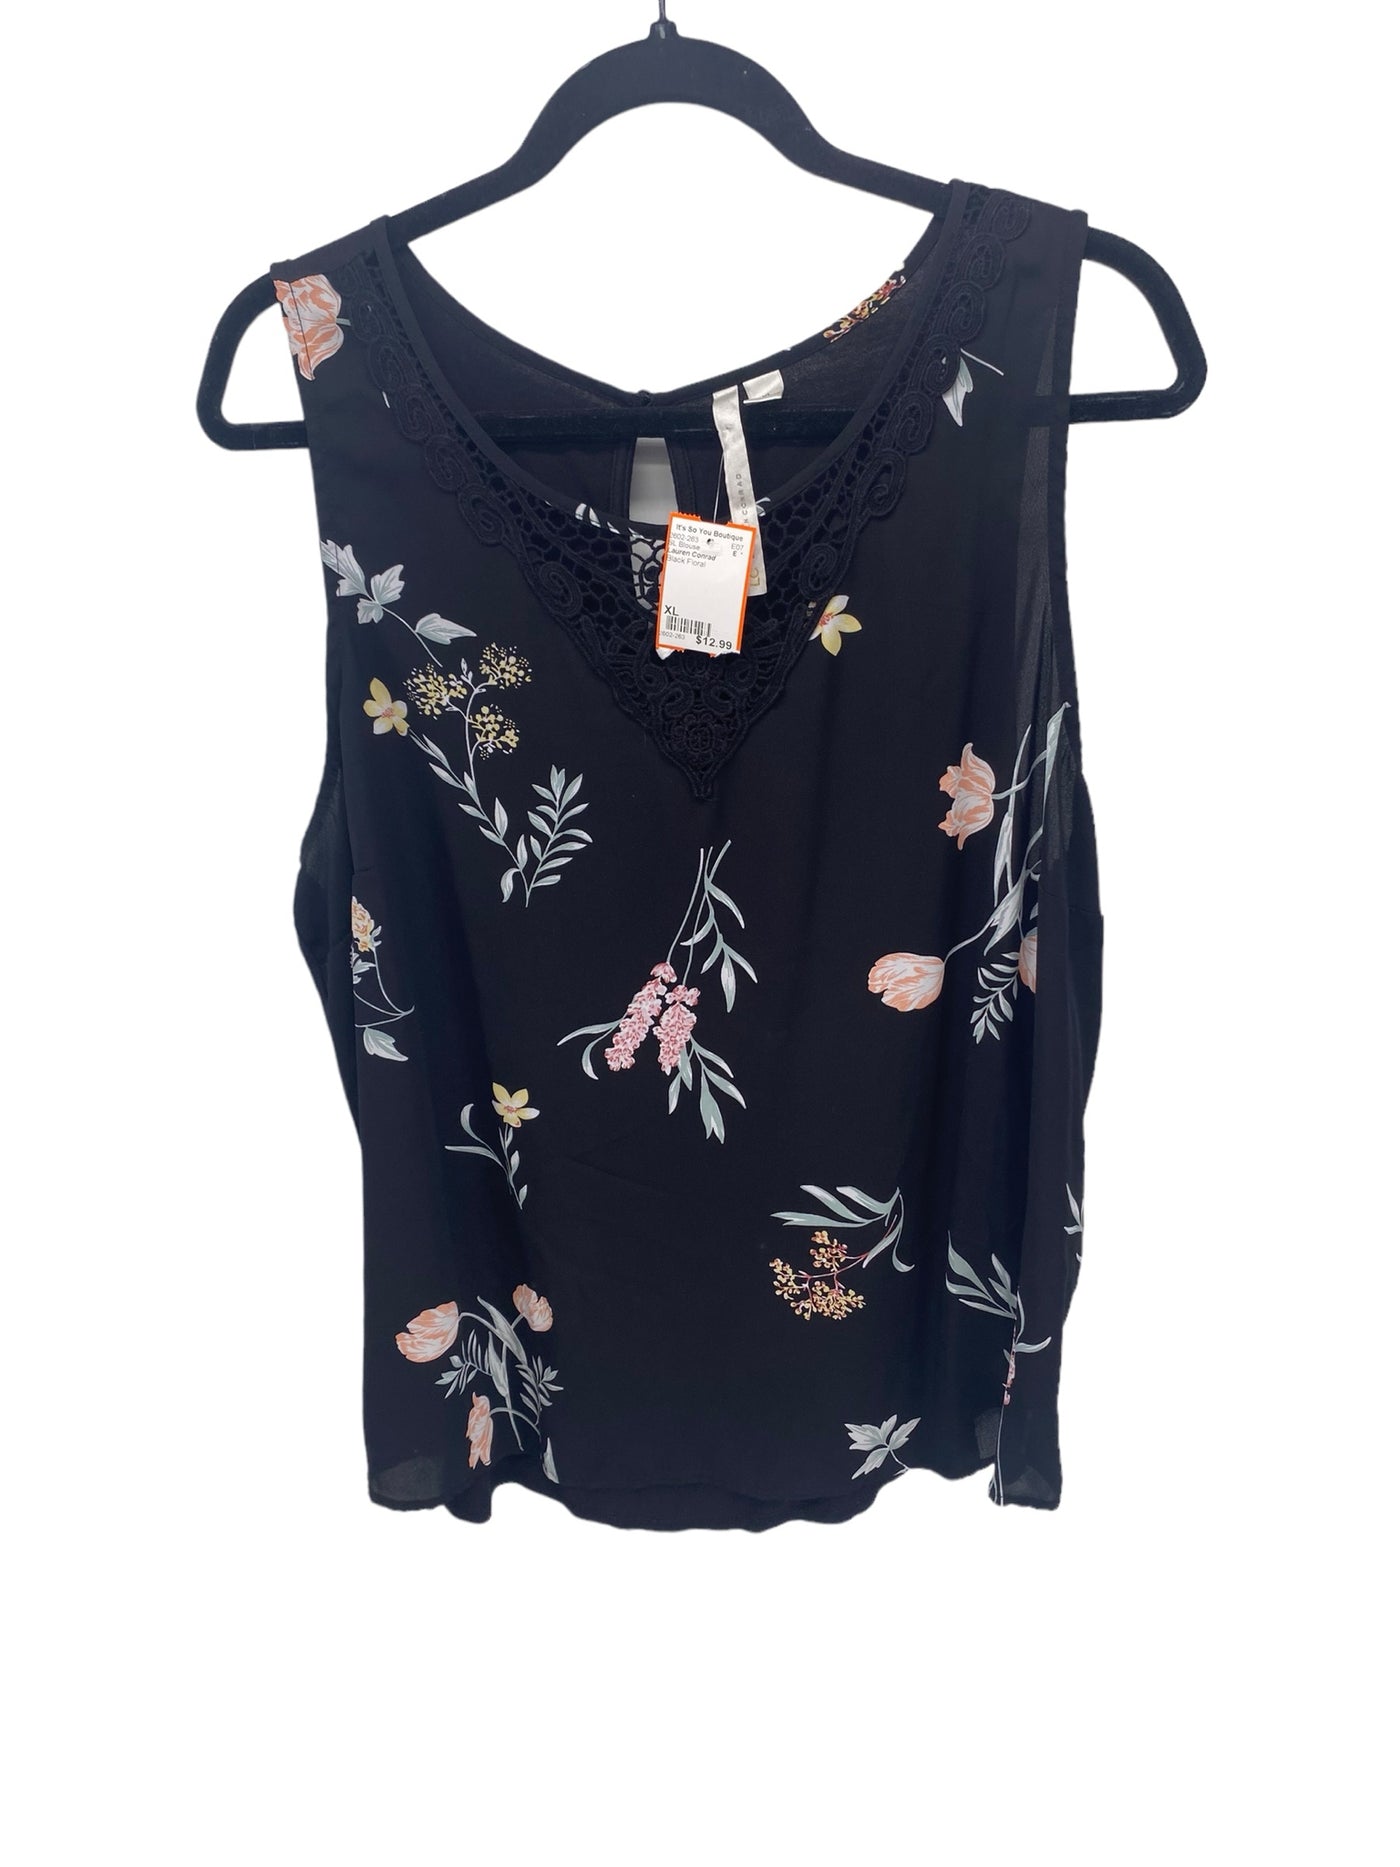 Lauren Conrad Misses Size XL Black Floral SL Blouse